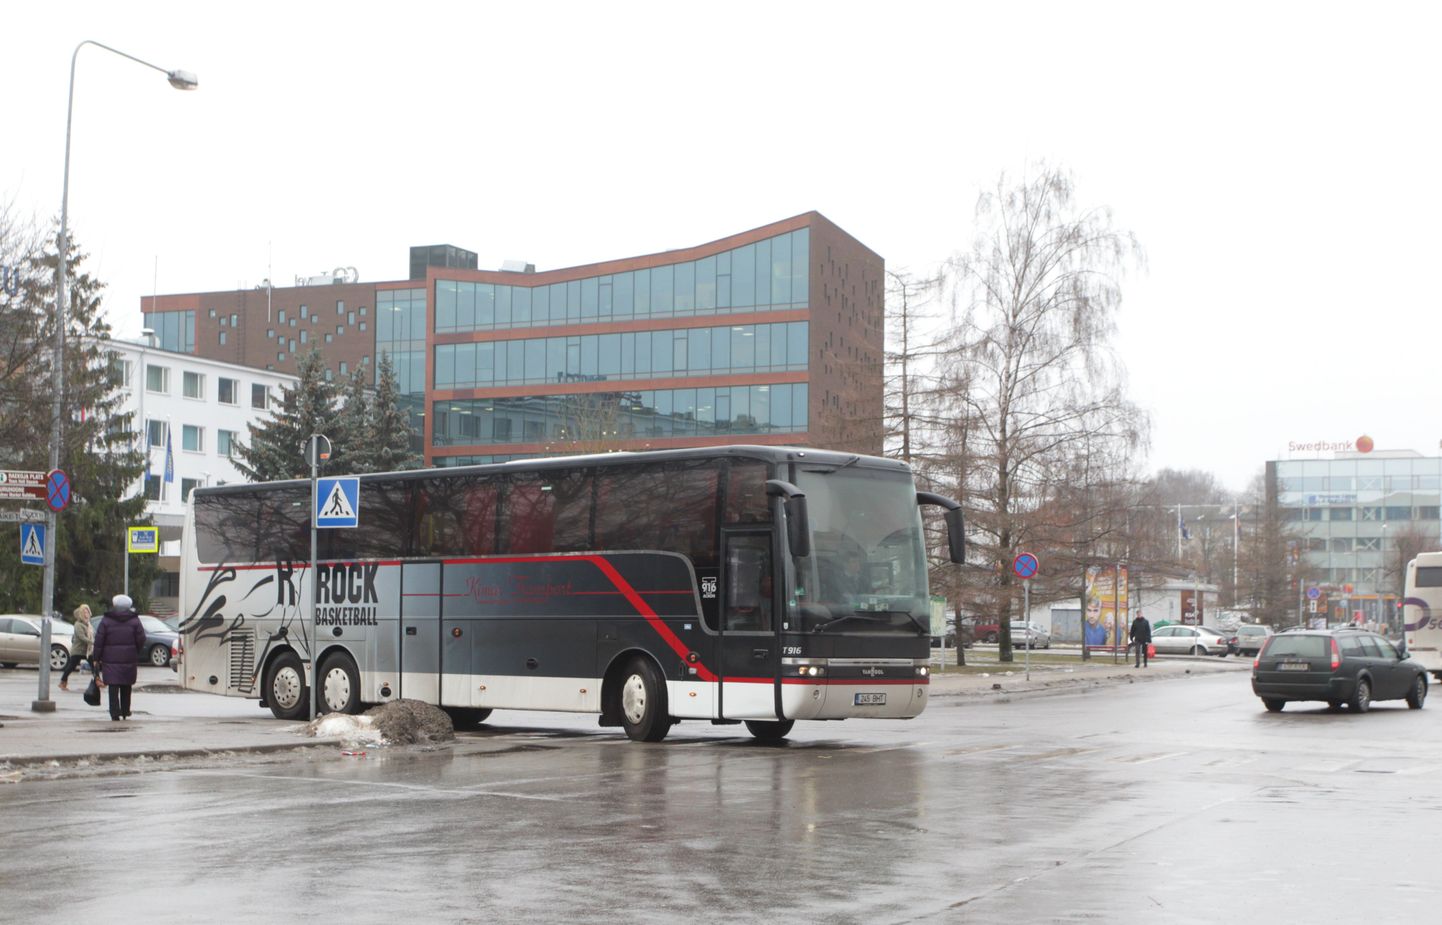 Täna lõunal saabus Tartusse Krasnõje Krõlja korvpallimeeskond, kellega TÜ/Rock läheb vastamisi homme toimuvas EuroChallenge'i mängus.